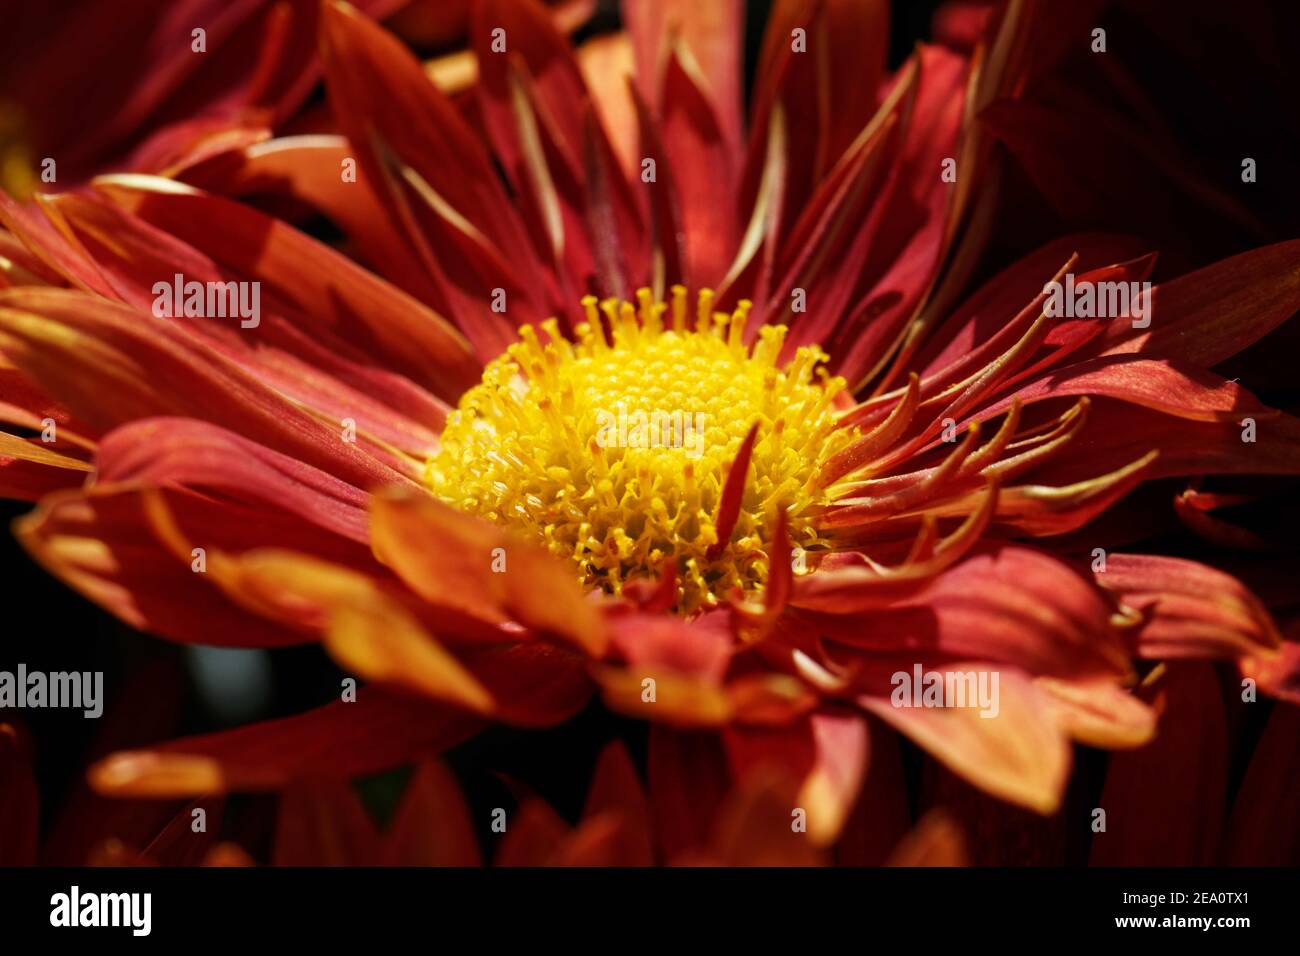 Rote Gänseblümchen Chrysanthemum ist von früh bis spät Herbst mit atemberaubenden roten Gänseblümchen mit gelben Augen an den Enden der Stiele bedeckt. Stockfoto